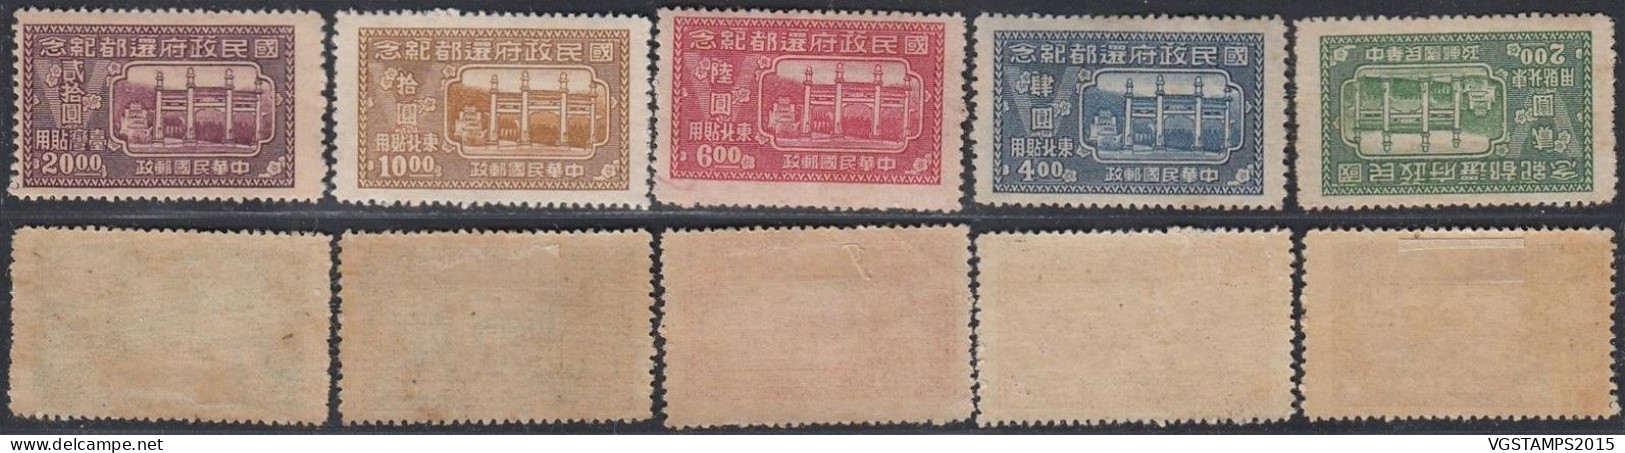 Chine Du Nord Est 1947 - Timbres Neufs Avec Charnière Et Sans Gomme. Michel Nº 48/52 - Yvert Nº 48/52..  (VG) DC-12535 - Chine Du Nord-Est 1946-48